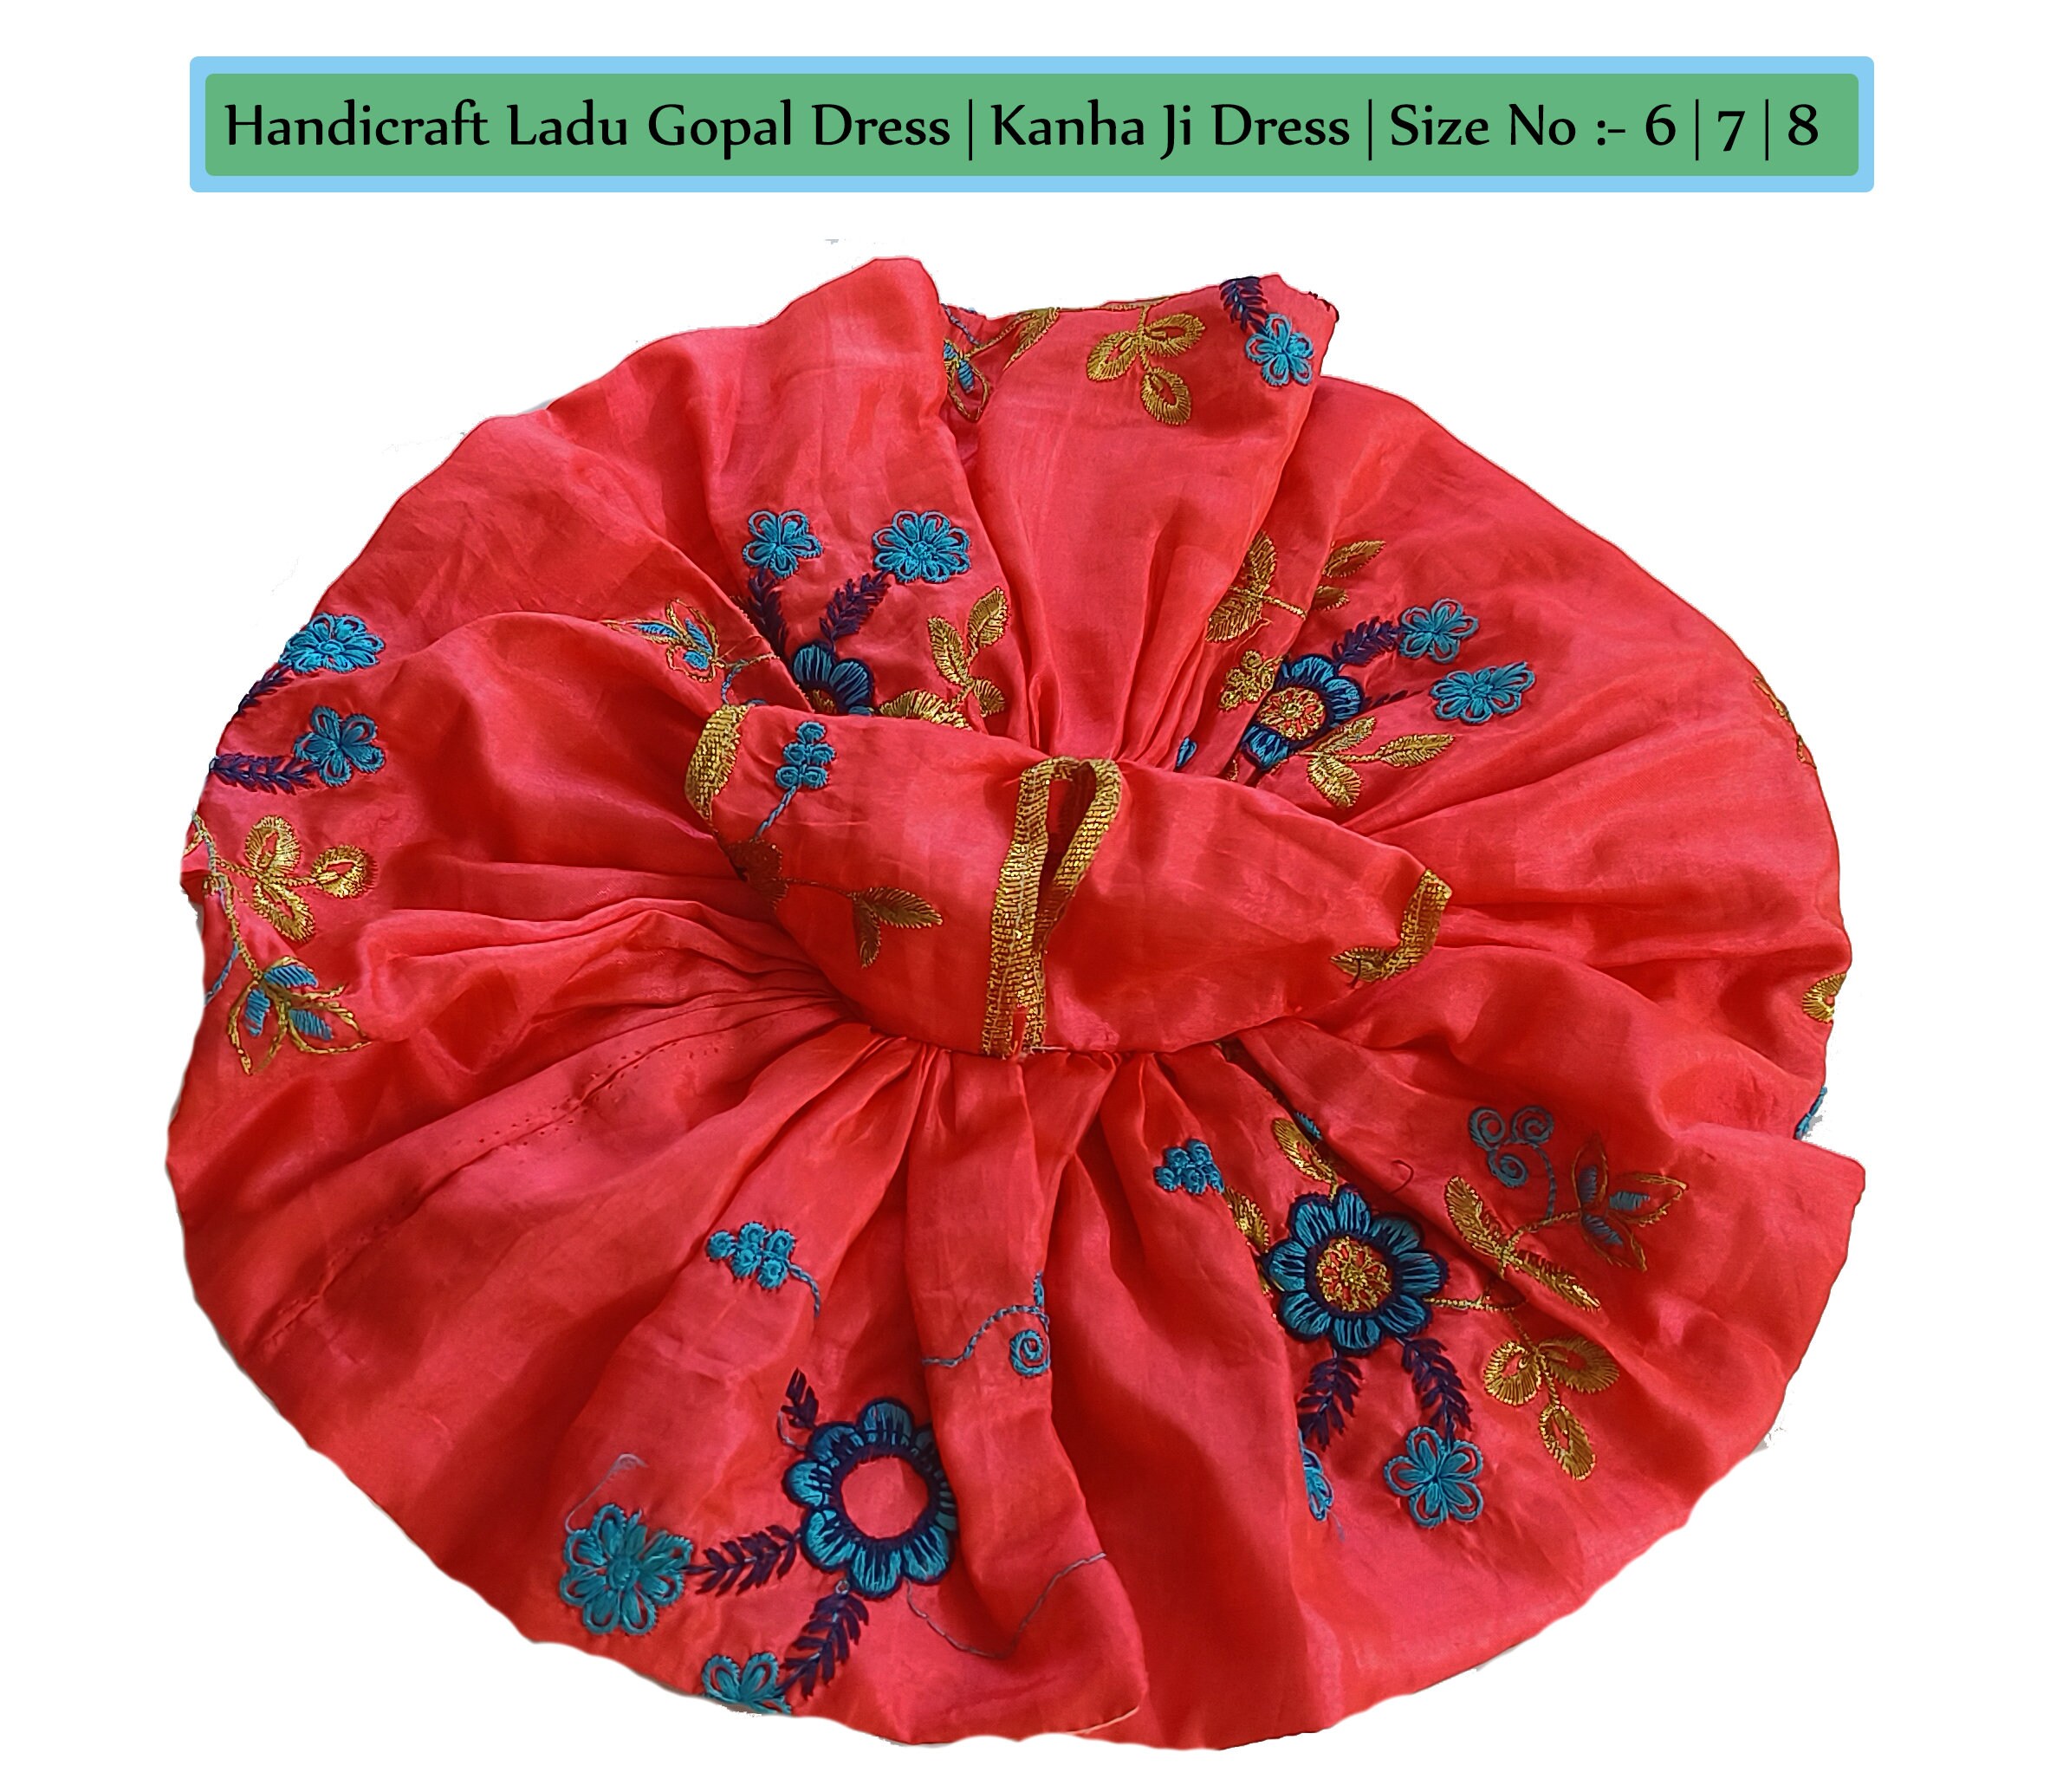 Designer Laddu Gopal Dress for Size 0, 1, 2, 3, 4, 5, 6, 7, Rose Flower  Dress for Laddu Gopal, Kanha Ji Dress, Diety Clothes, Krishna Dress - Etsy